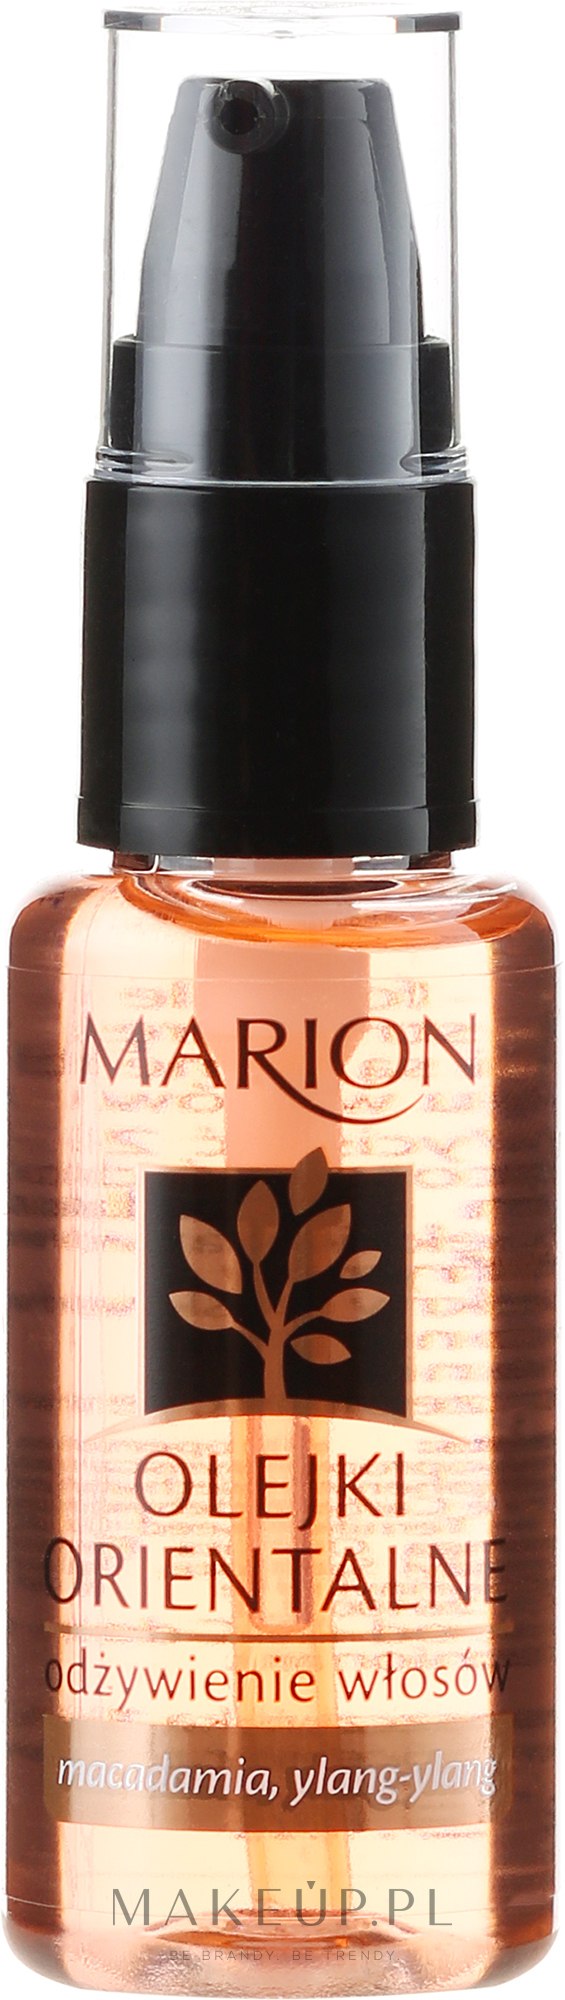 marion 100 naturalny olejek do włosów twarzy i ciała makadamia